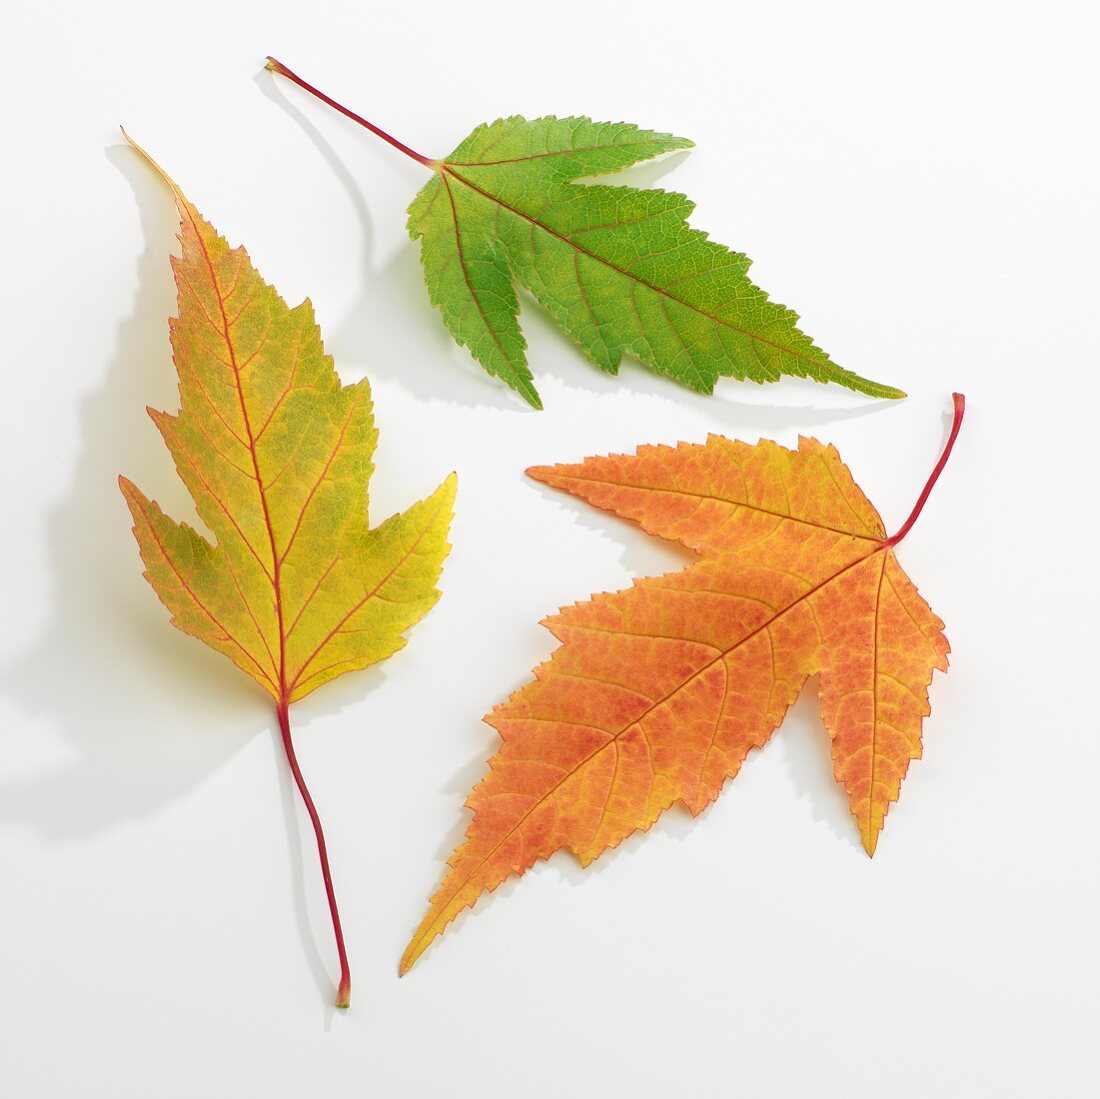 Three individual autumn leaves